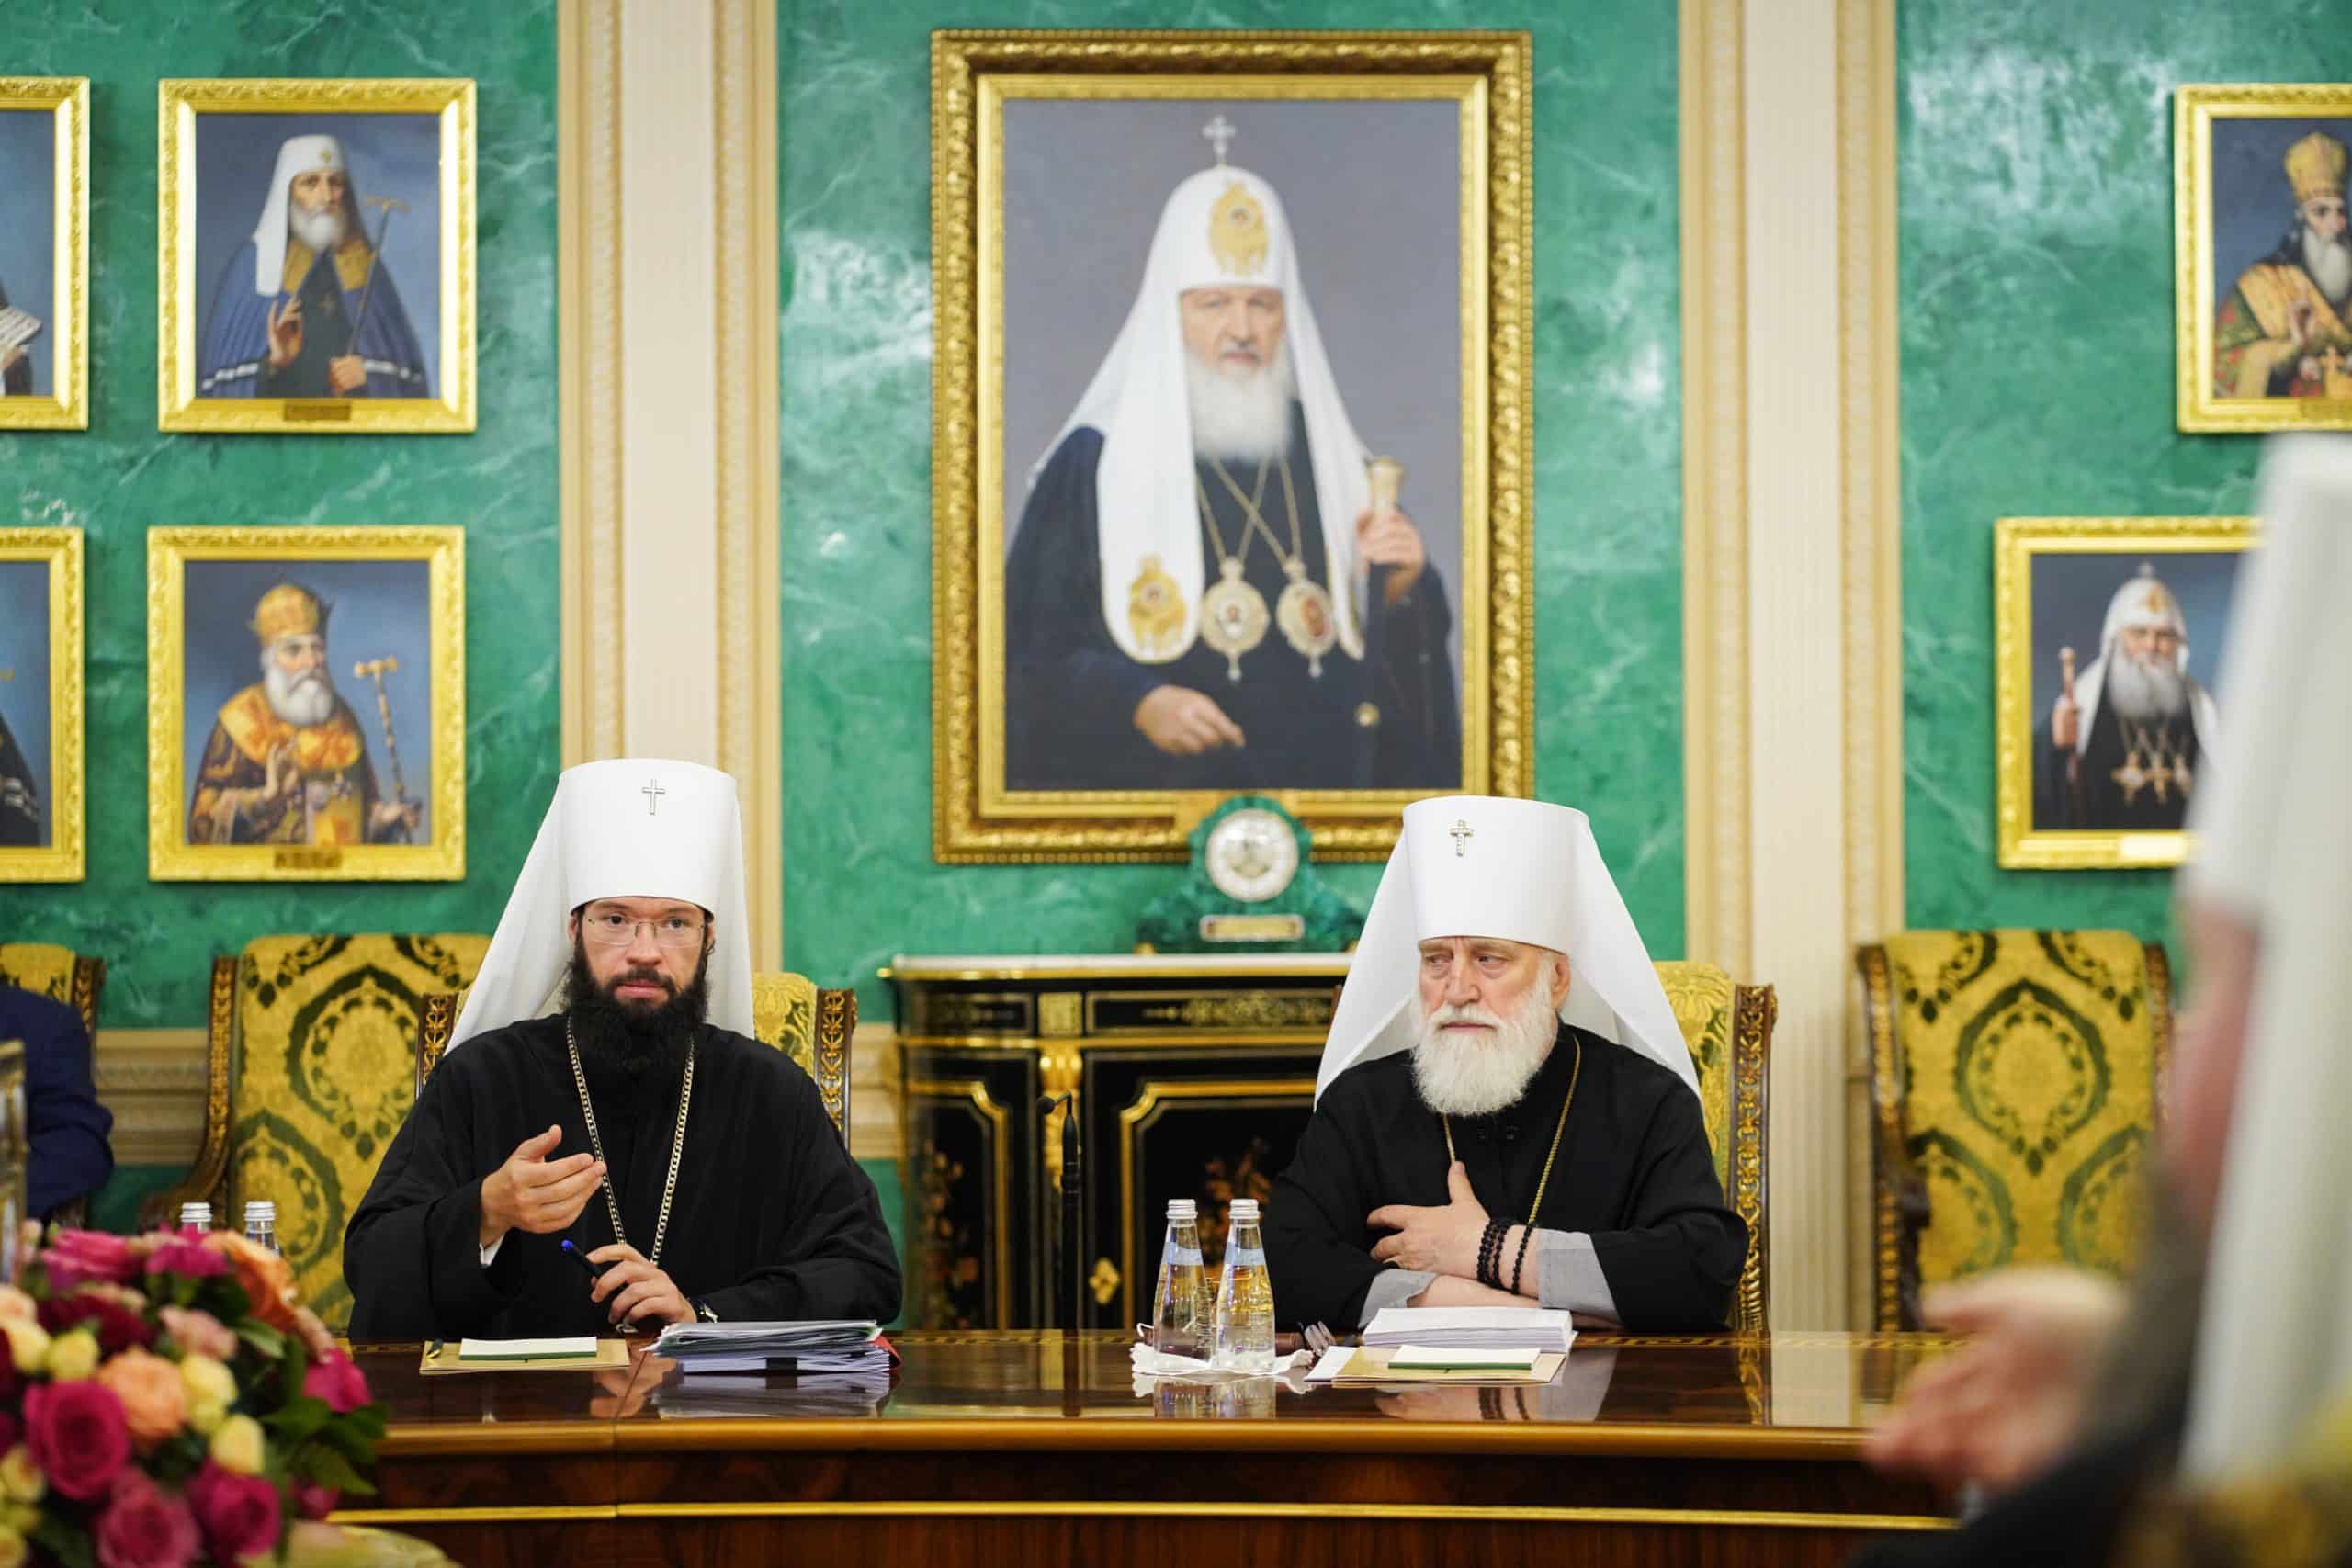 Le saint-synode de l’Église orthodoxe russe dissout le département des institutions du patriarcat de moscou à l’étranger et transfère ses fonctions au département des affaires ecclésiastiques extérieures